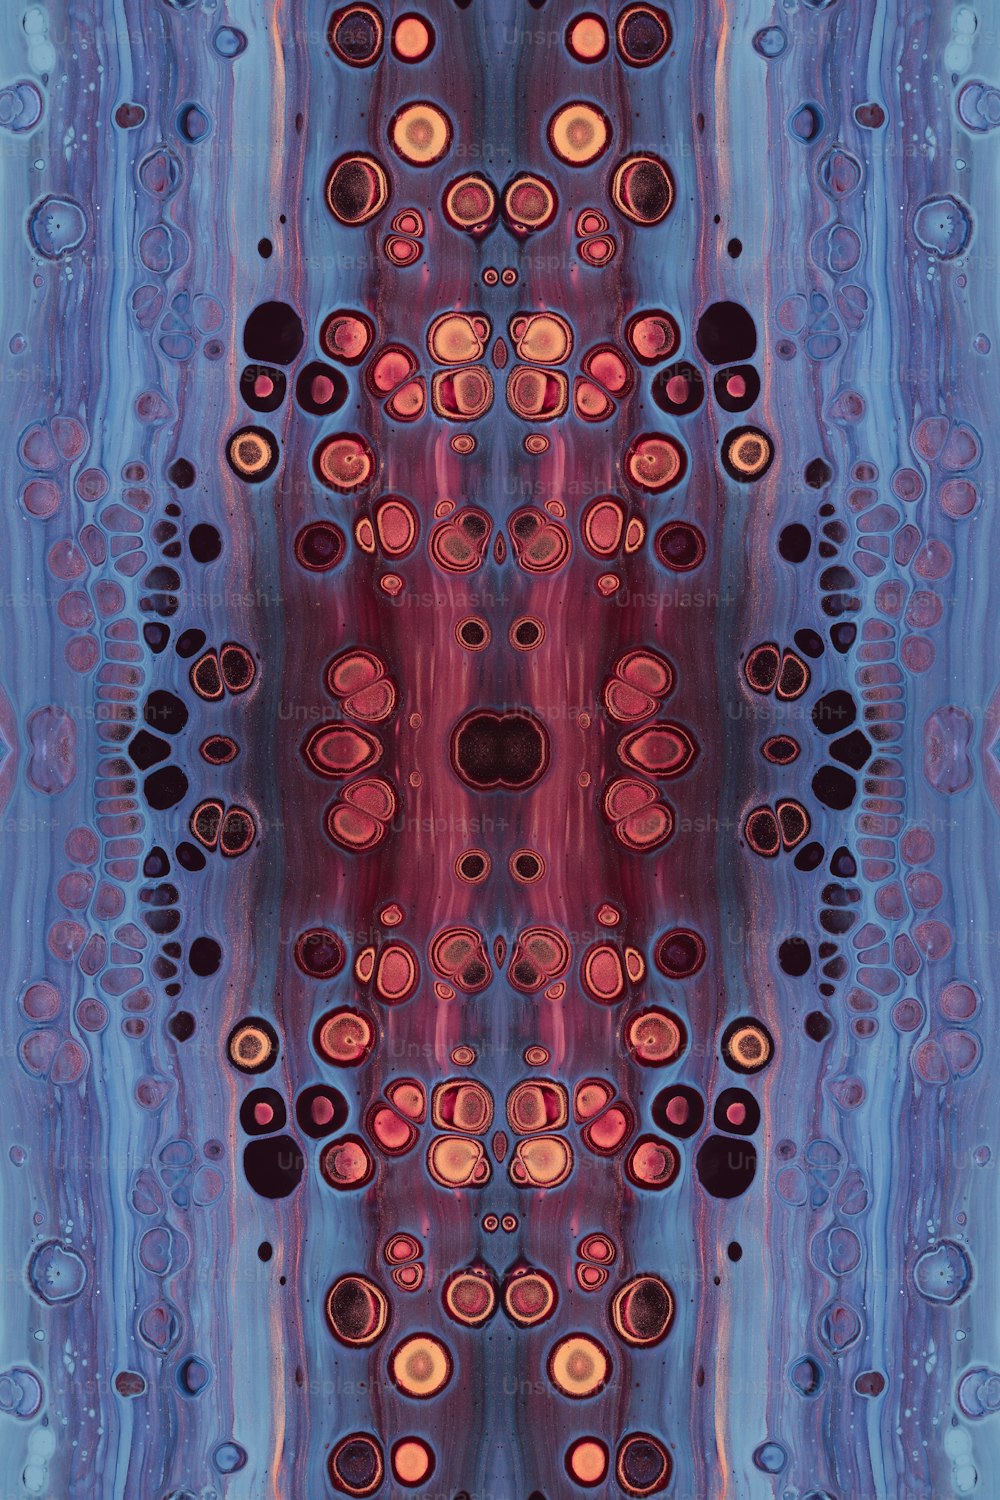 ein Bild eines blauen und roten Musters